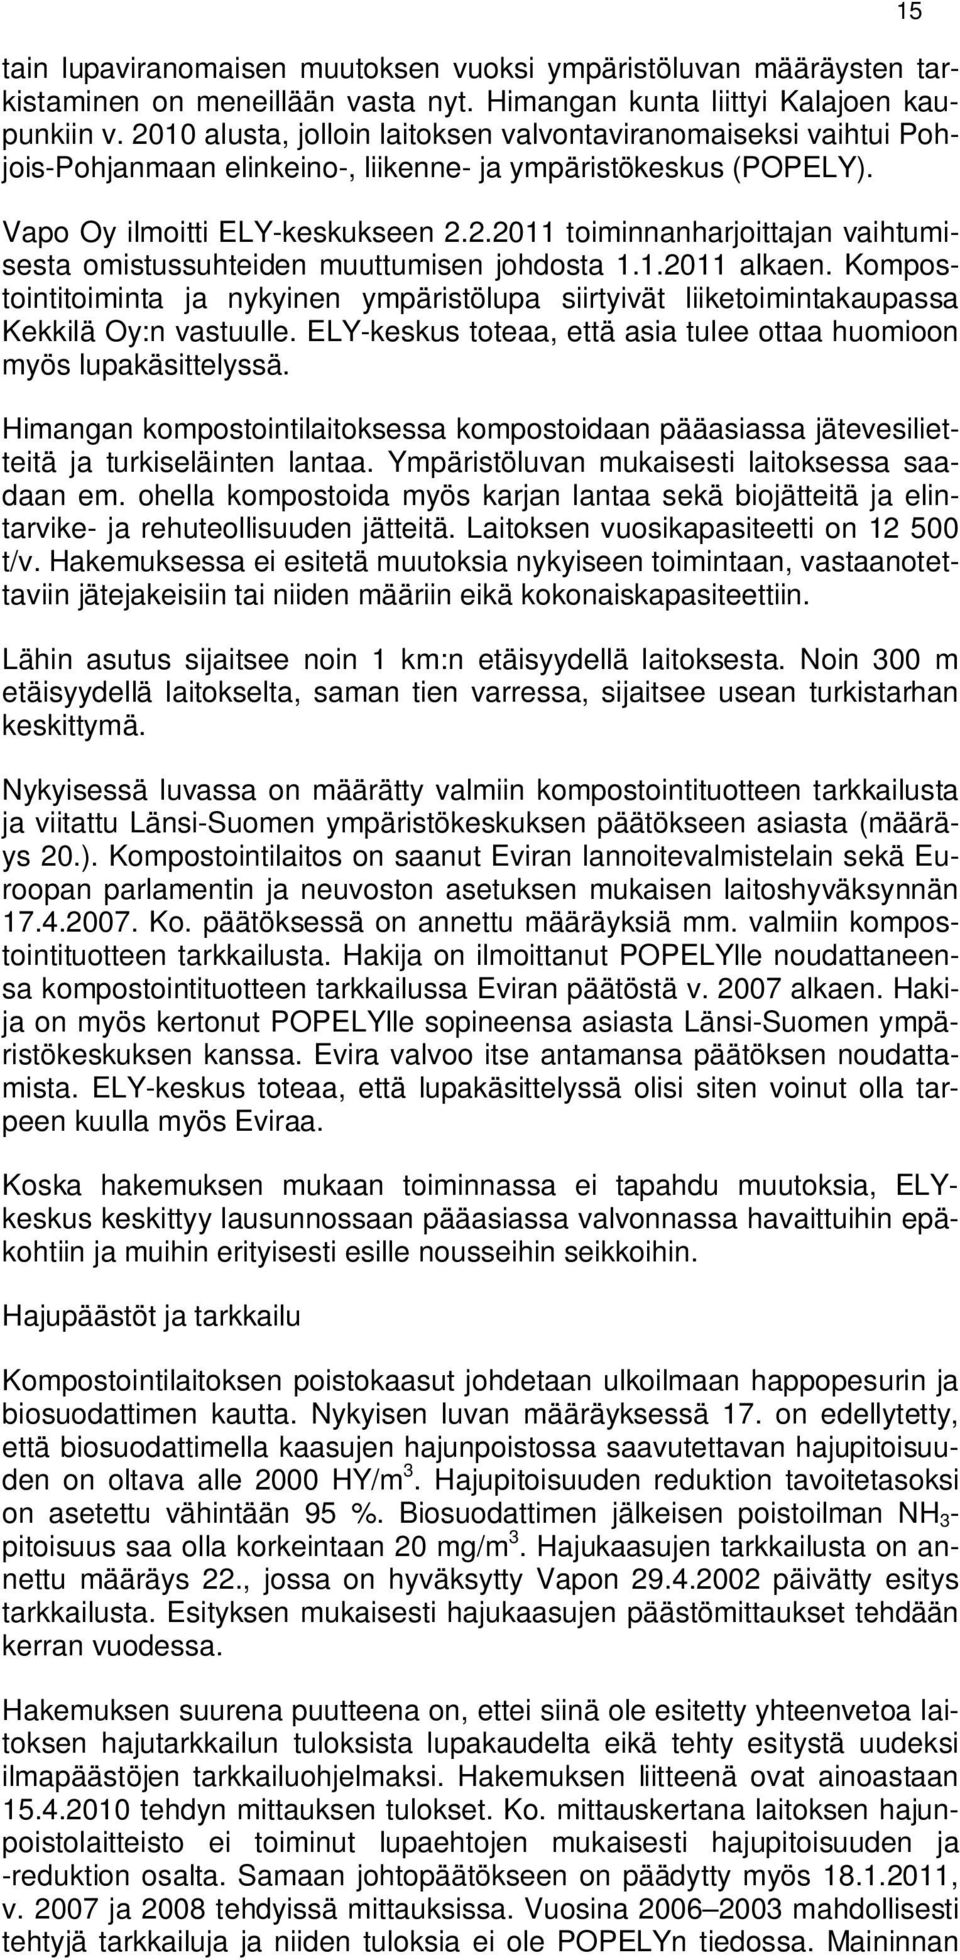 1.2011 alkaen. Kompostointitoiminta ja nykyinen ympäristölupa siirtyivät liiketoimintakaupassa Kekkilä Oy:n vastuulle. ELY-keskus toteaa, että asia tulee ottaa huomioon myös lupakäsittelyssä.